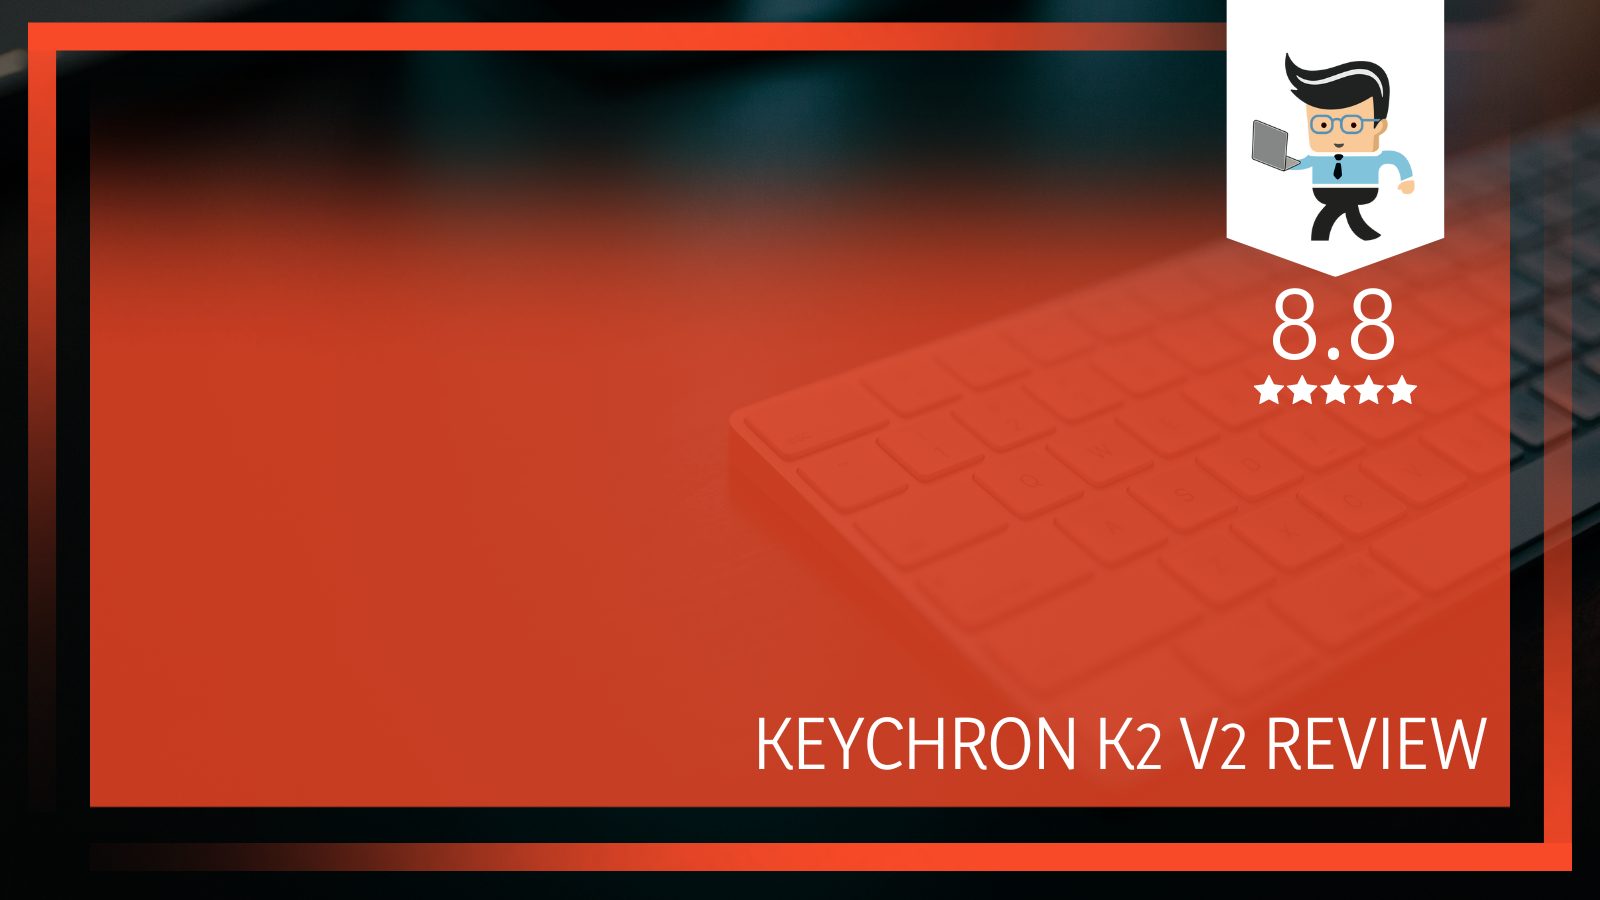 Keychron K2 V2 Review